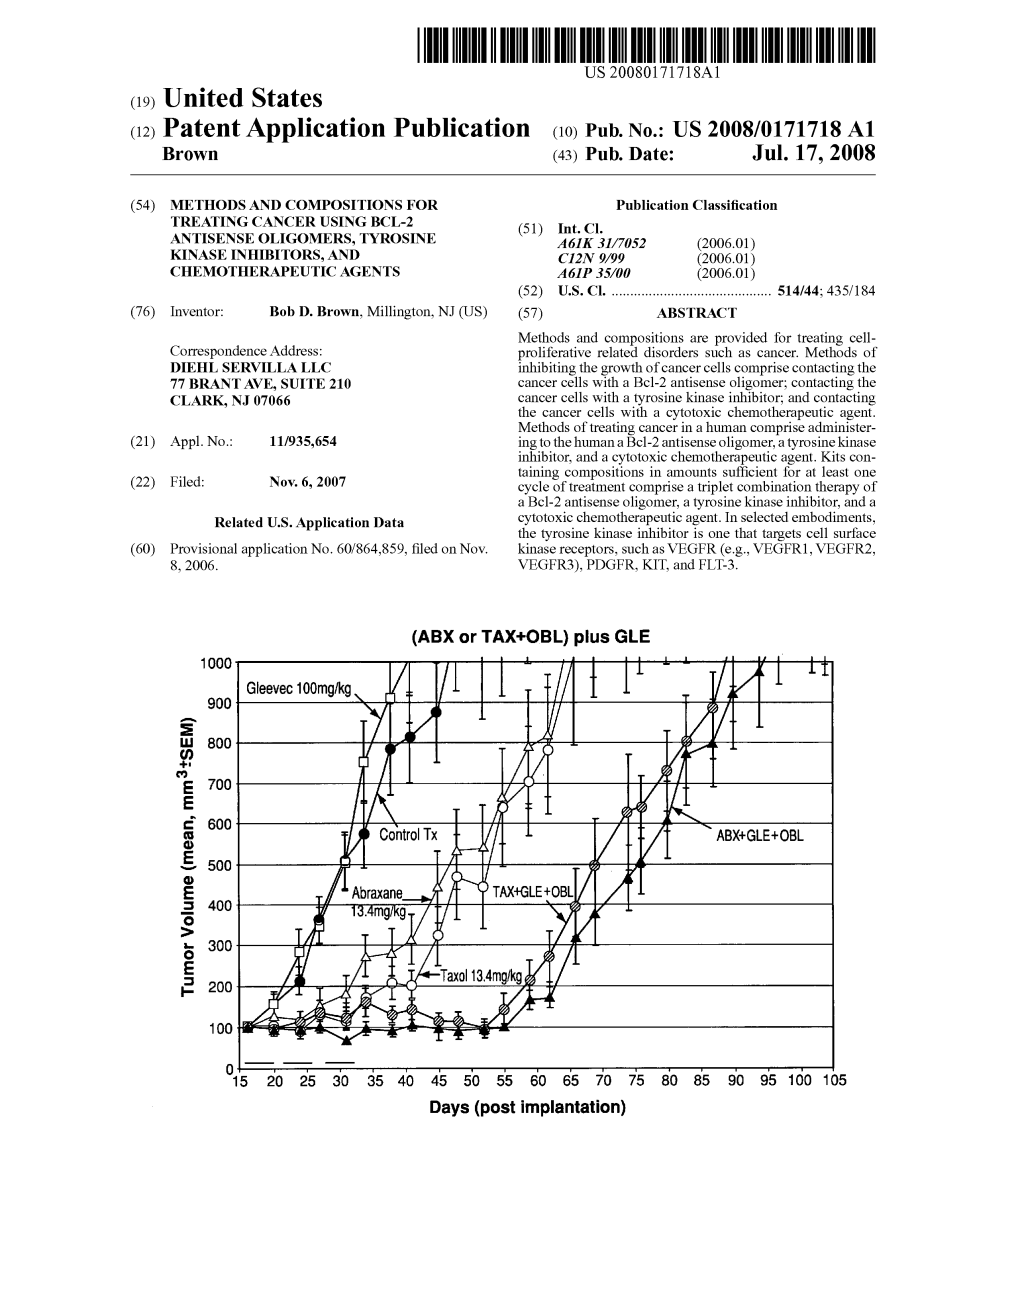 (12) Patent Application Publication (10) Pub. No.: US 2008/0171718A1 Brown (43) Pub